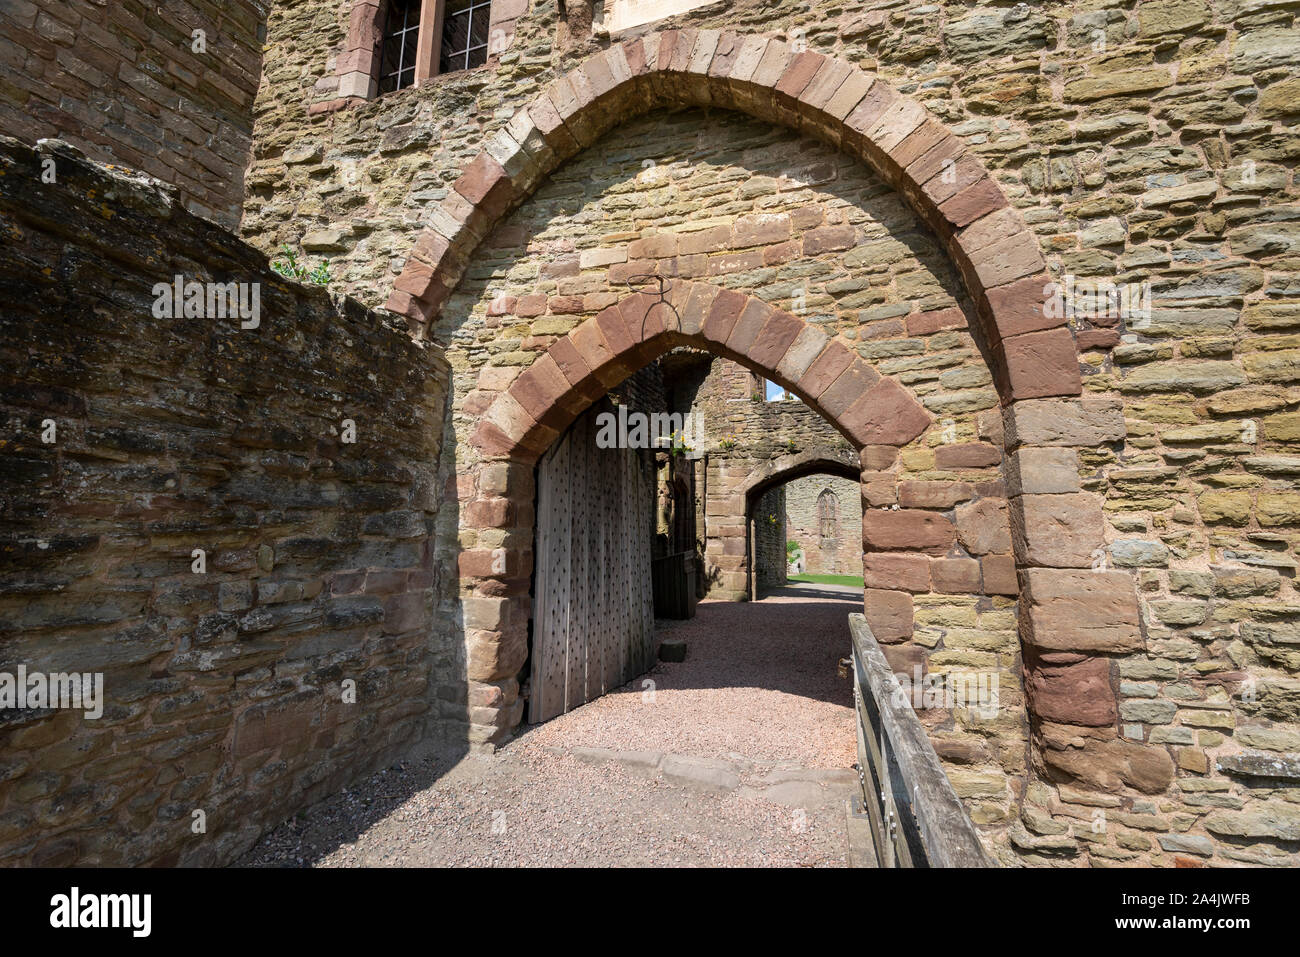 Le Château de Ludlow, Shropshire, Angleterre. Entrée privée à côté de la grande tour. Banque D'Images